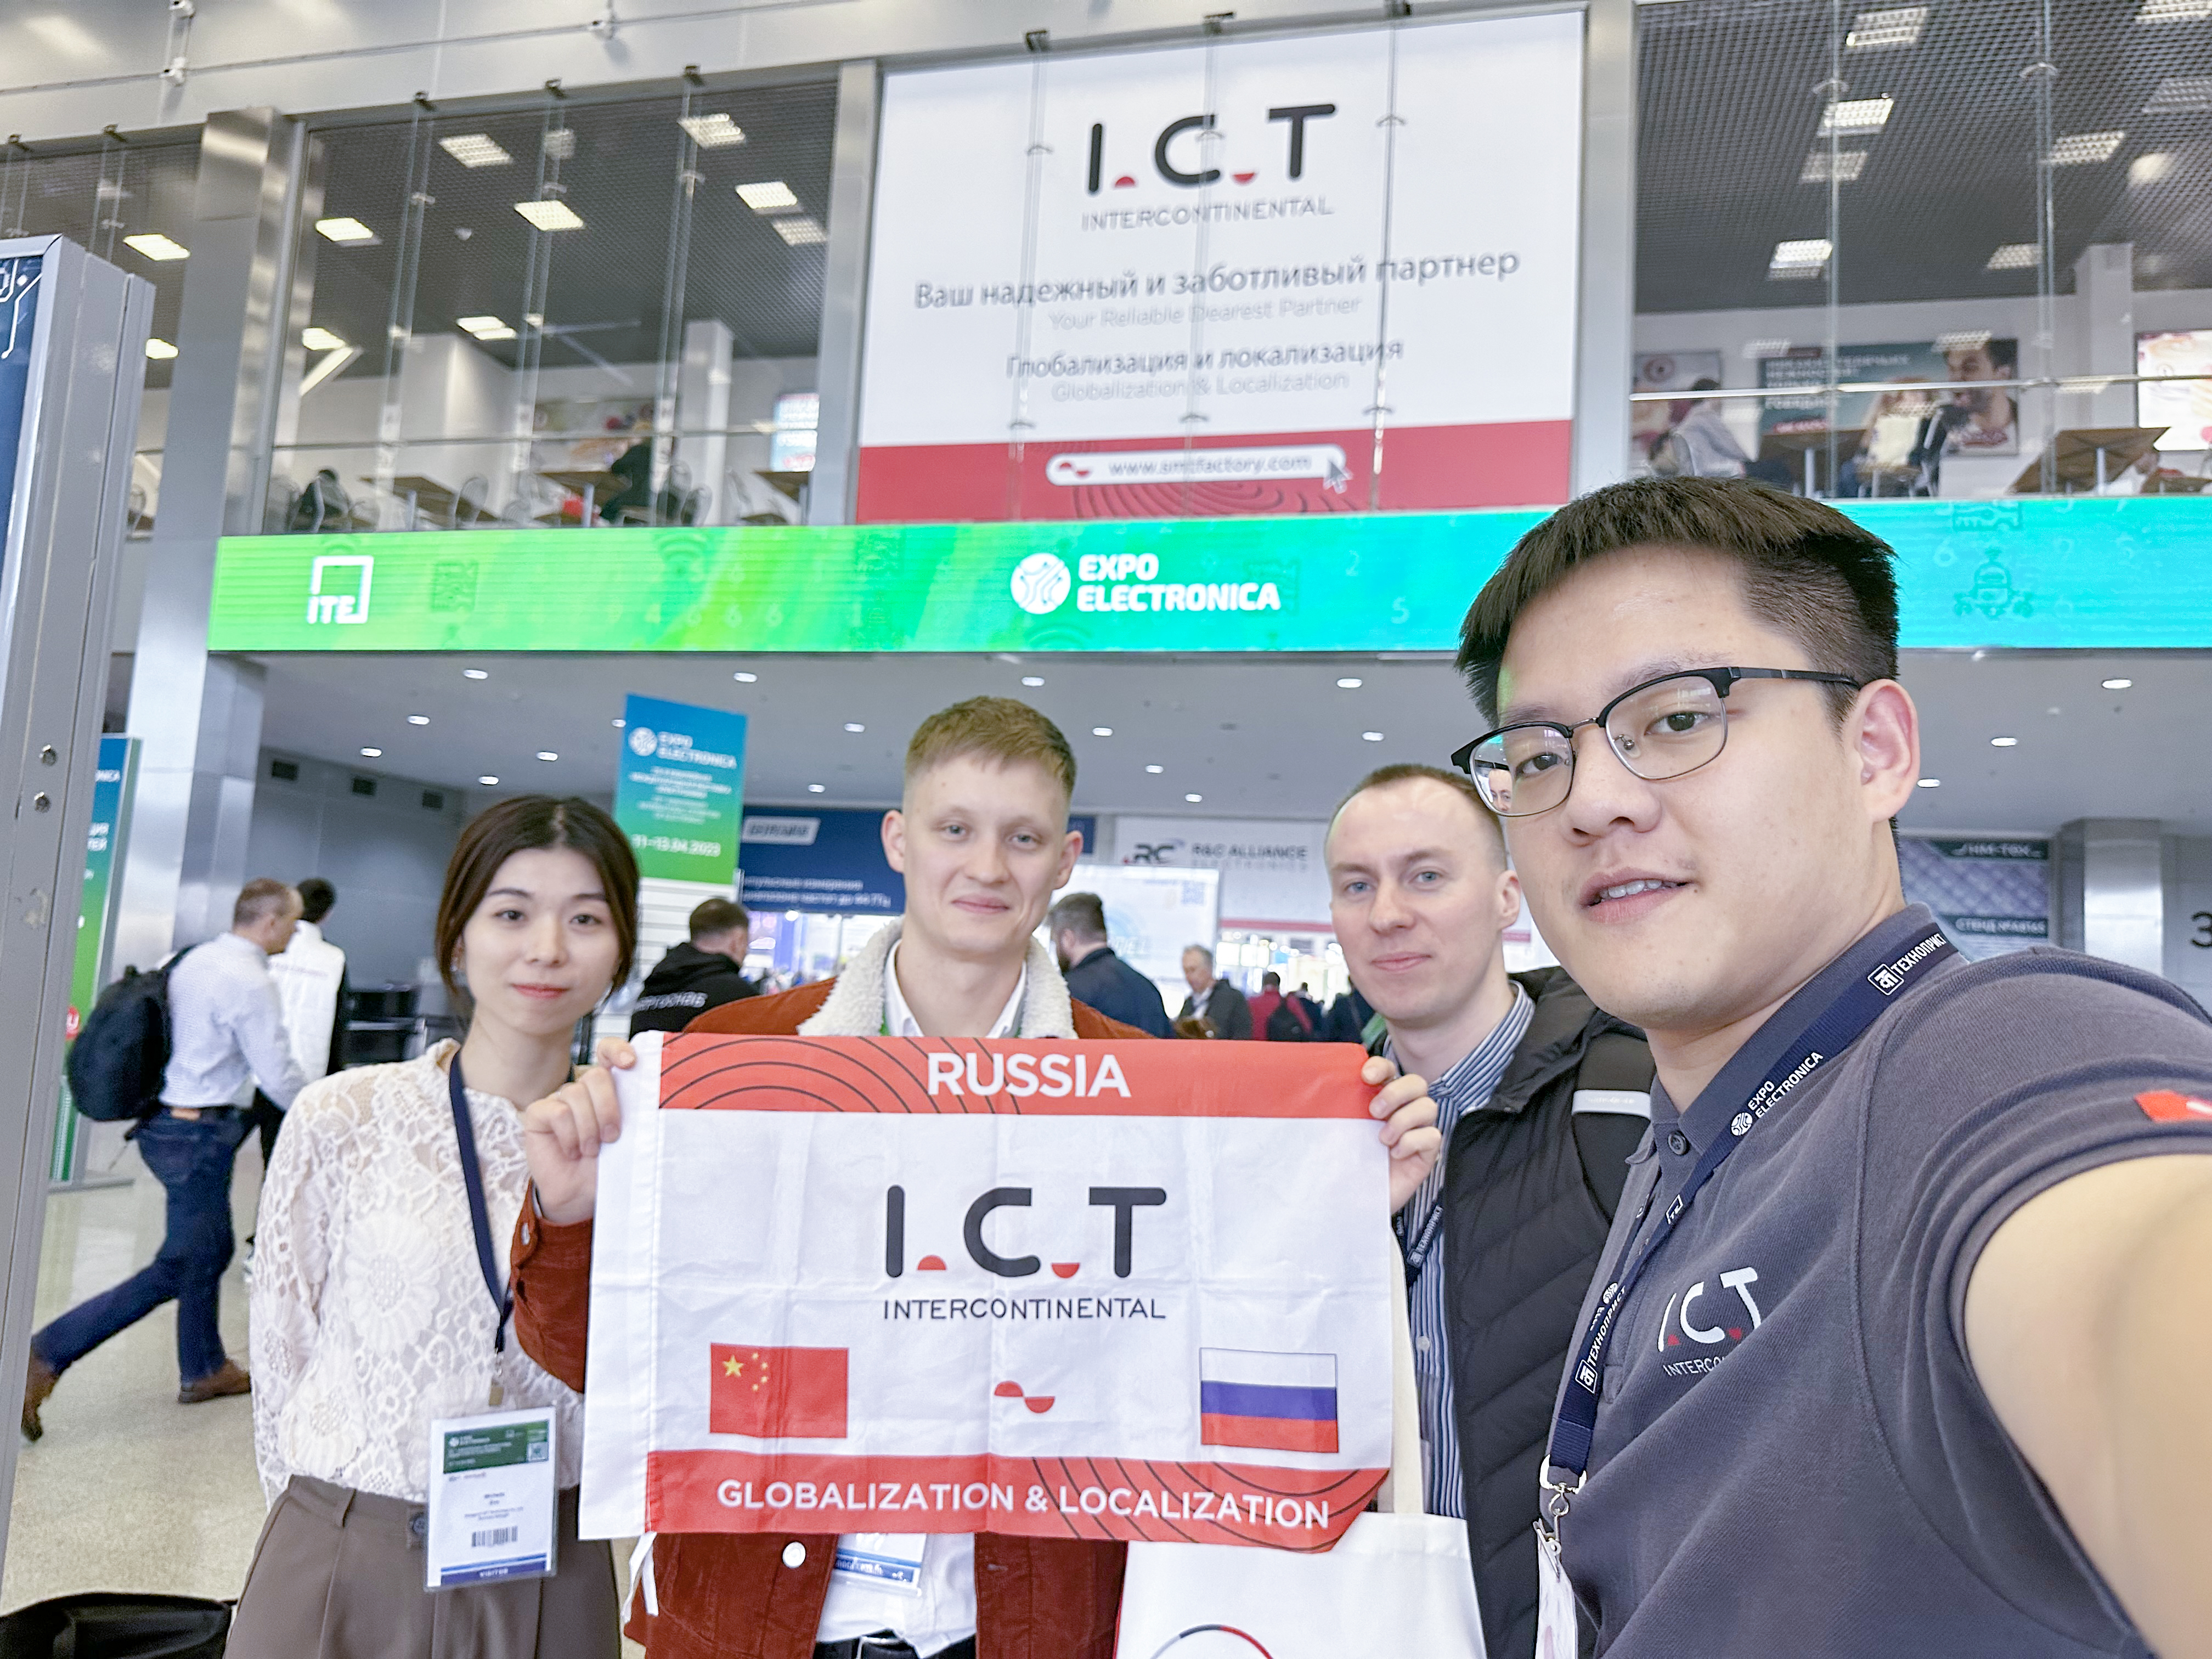 모스크바에서 열린 ExpoElectronica 전시회에서 I.C.T(3)